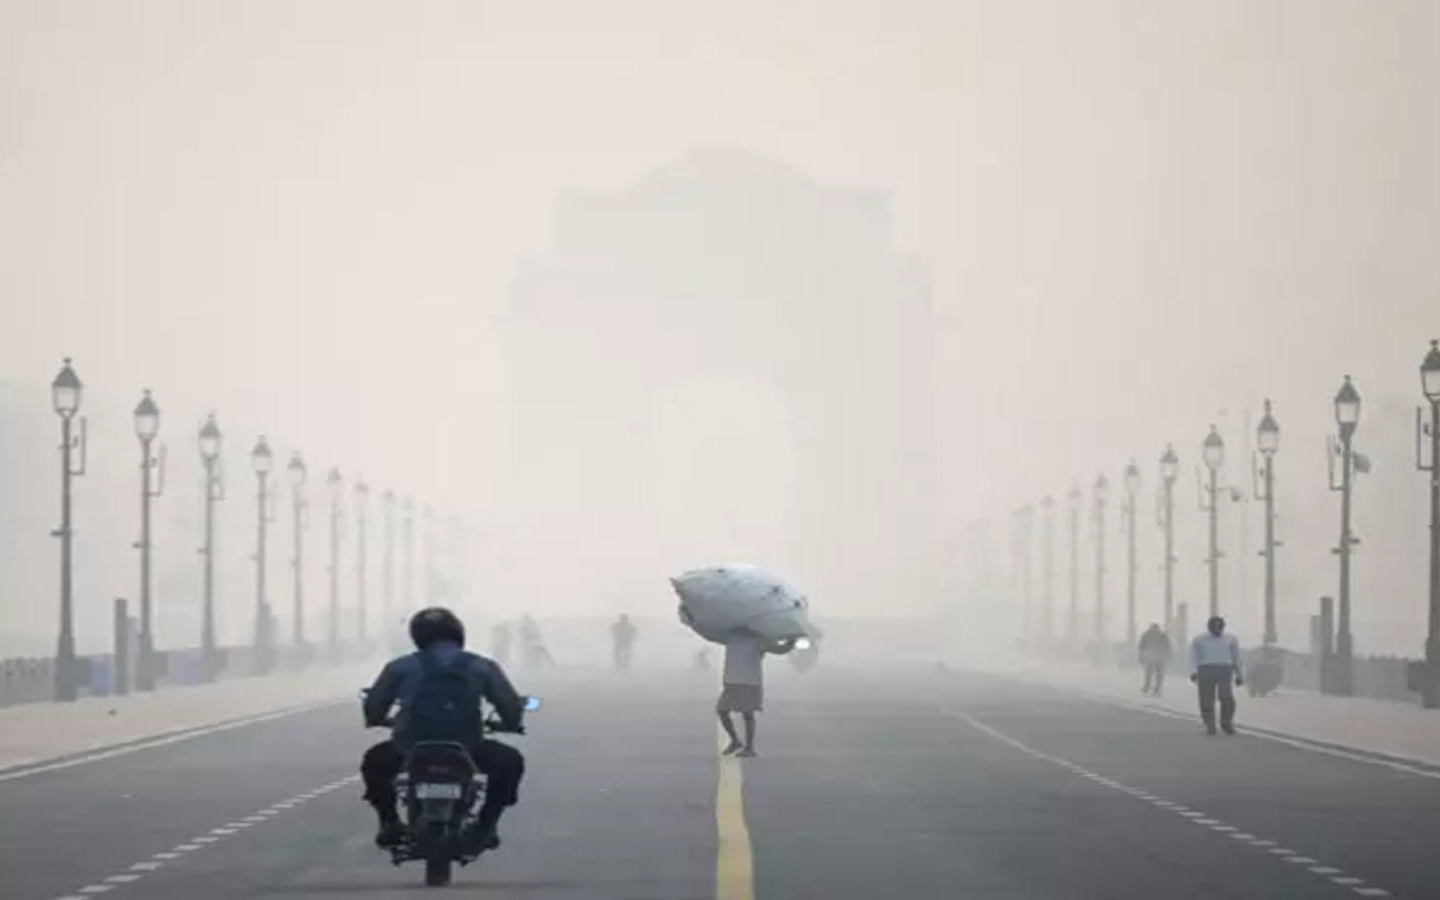 Hindistan'da hava kirliliği tehlikeli boyutlara ulaştı